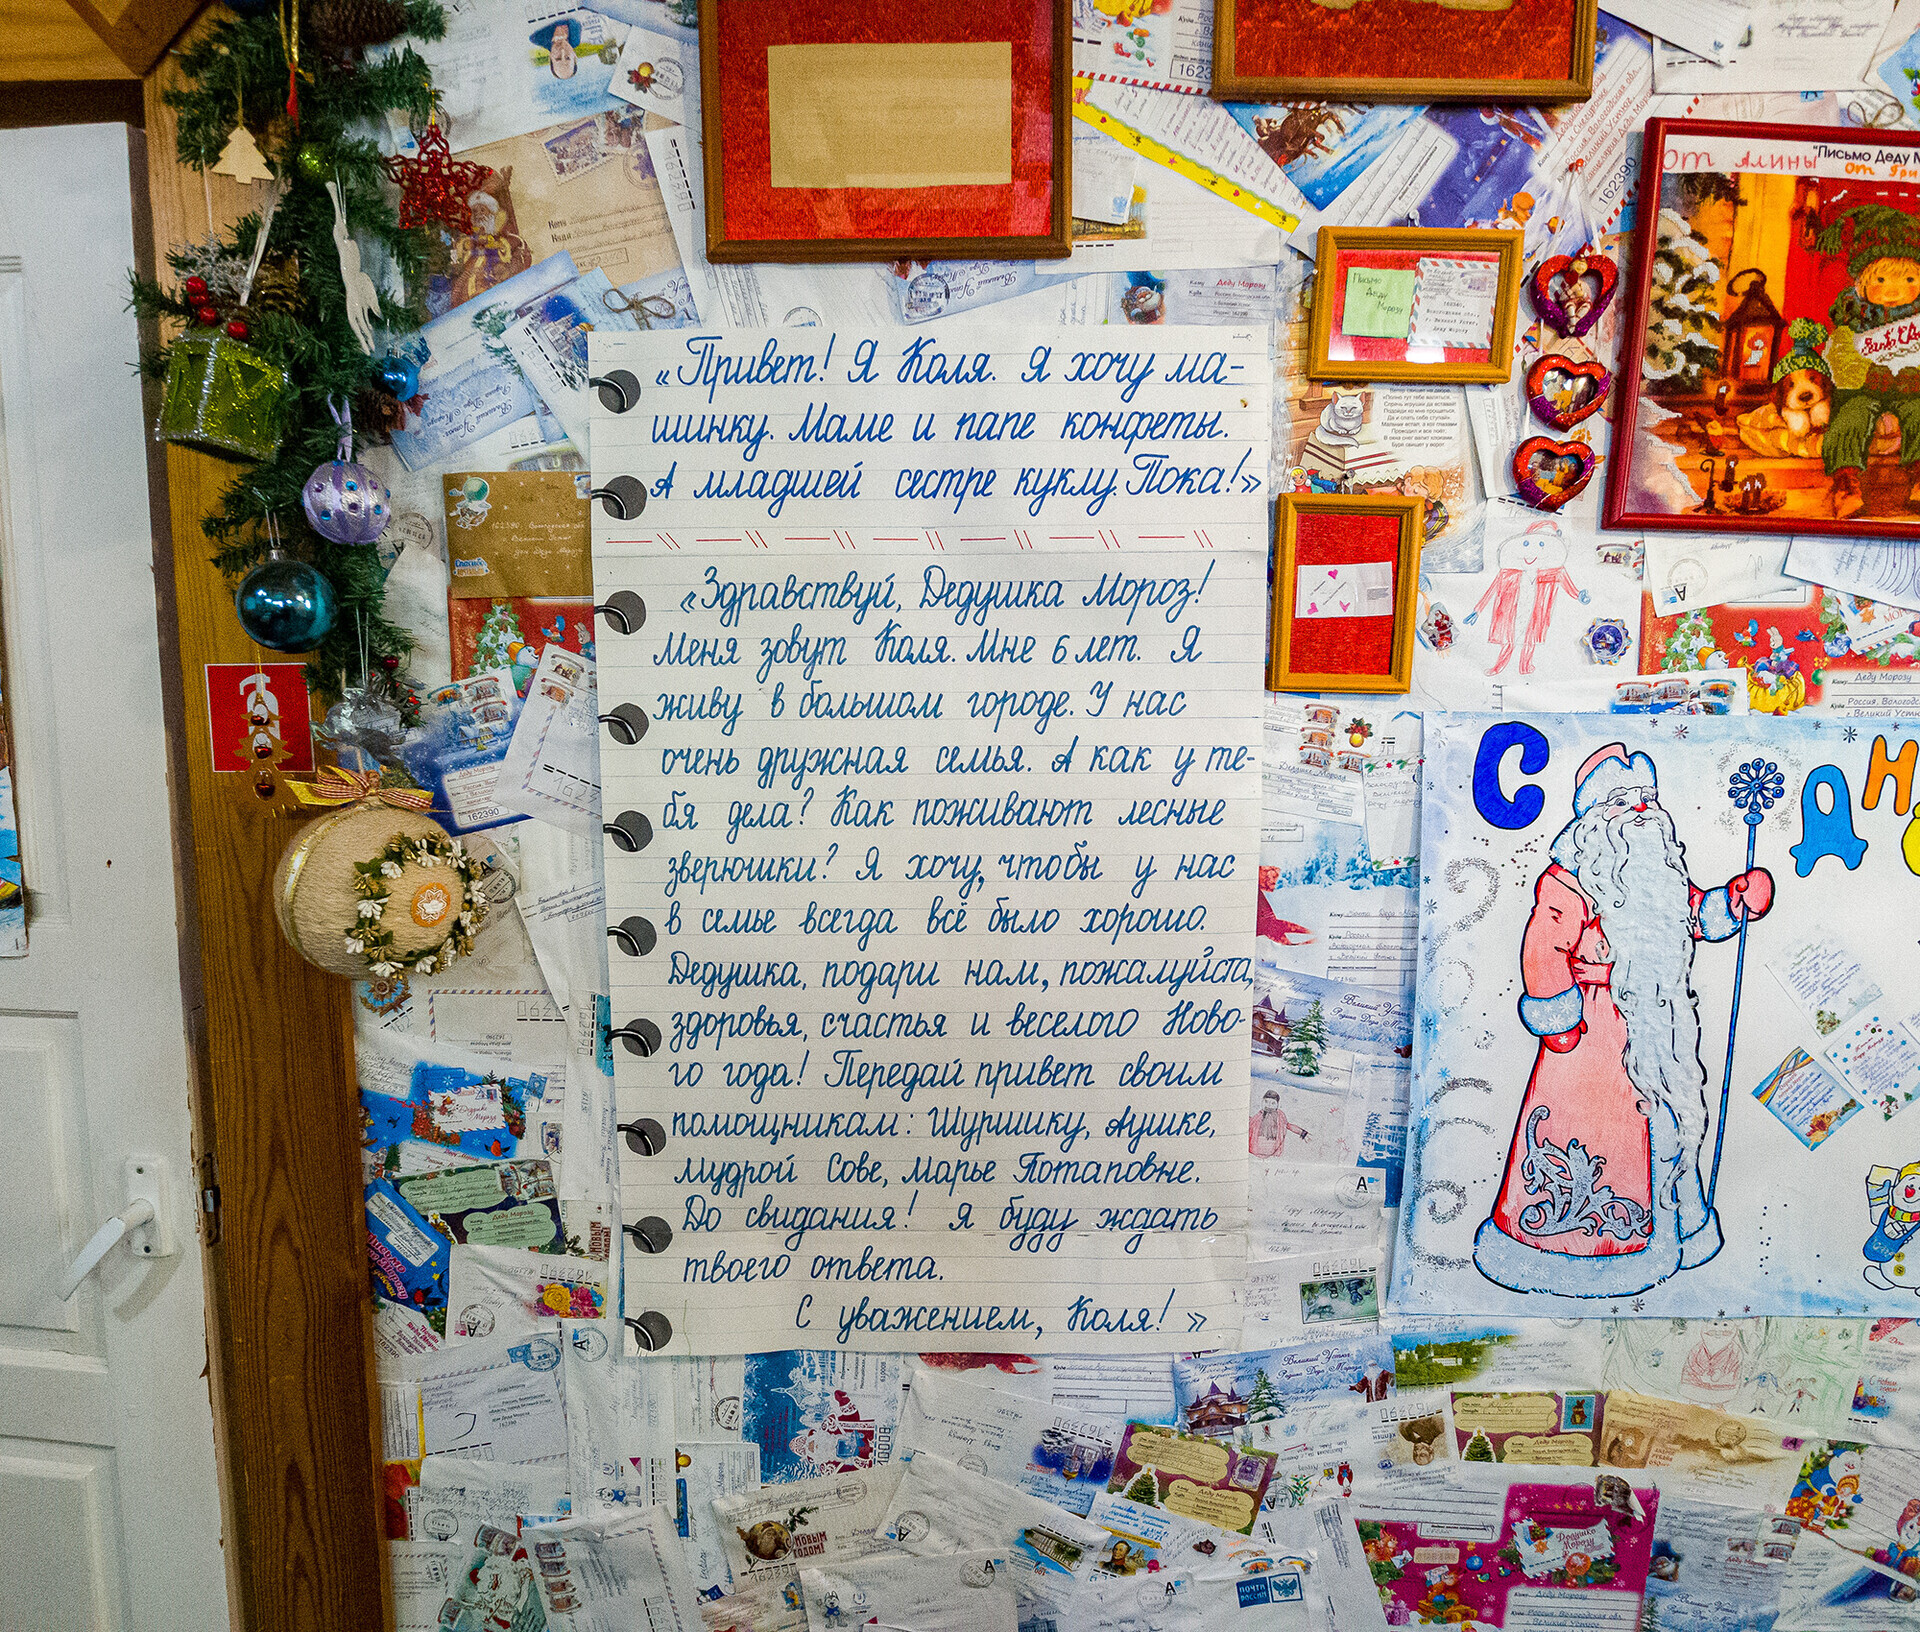 En esta carta, Kolya de 6 años, pregunta cómo están los animales del bosque y pide a Ded Moroz salud, felicidad y un feliz Año Nuevo.